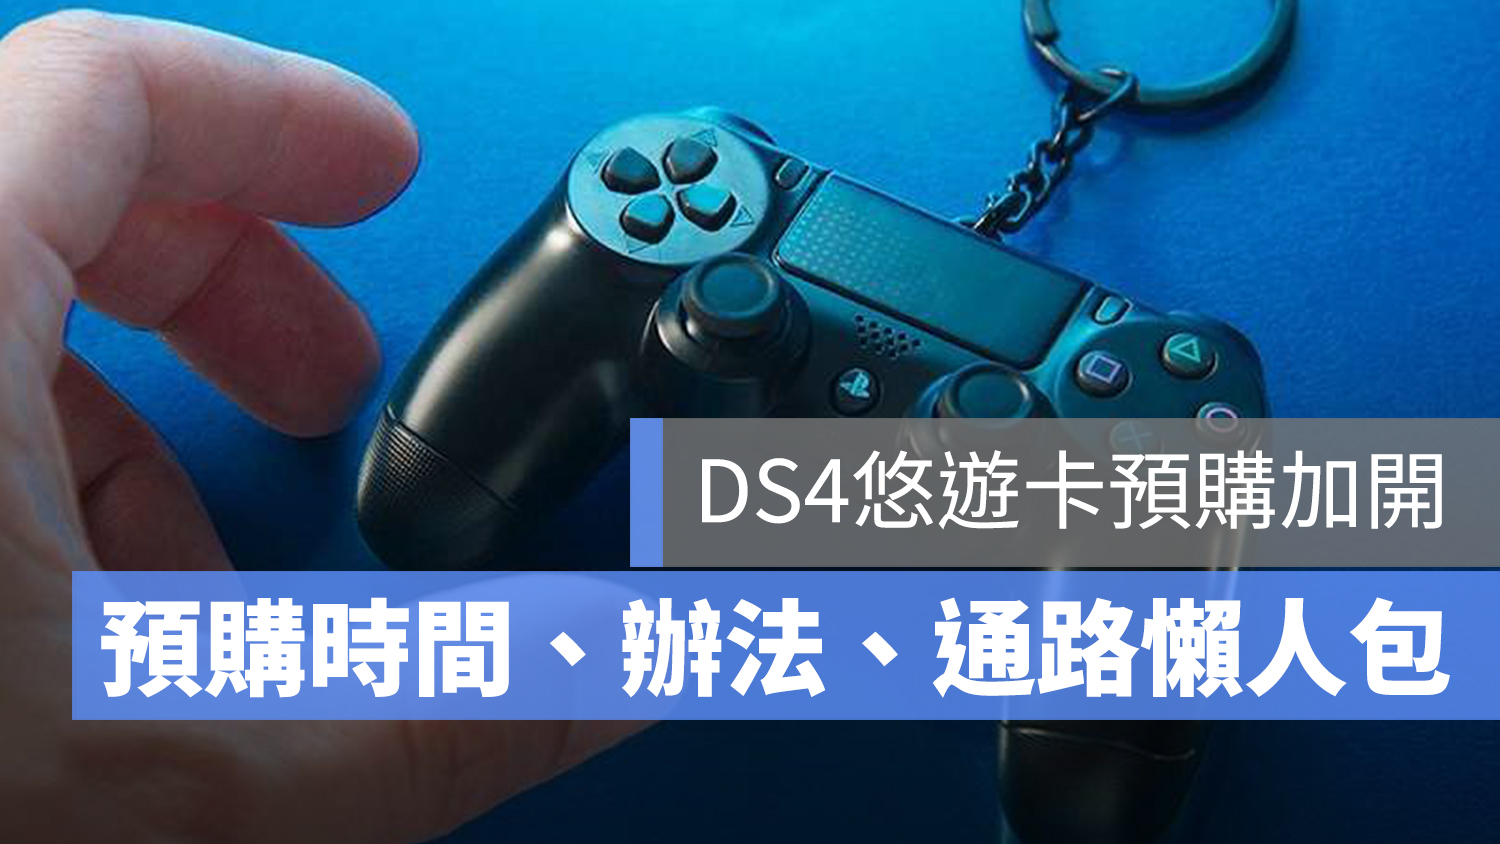 PS4 悠遊卡 DS4 預購